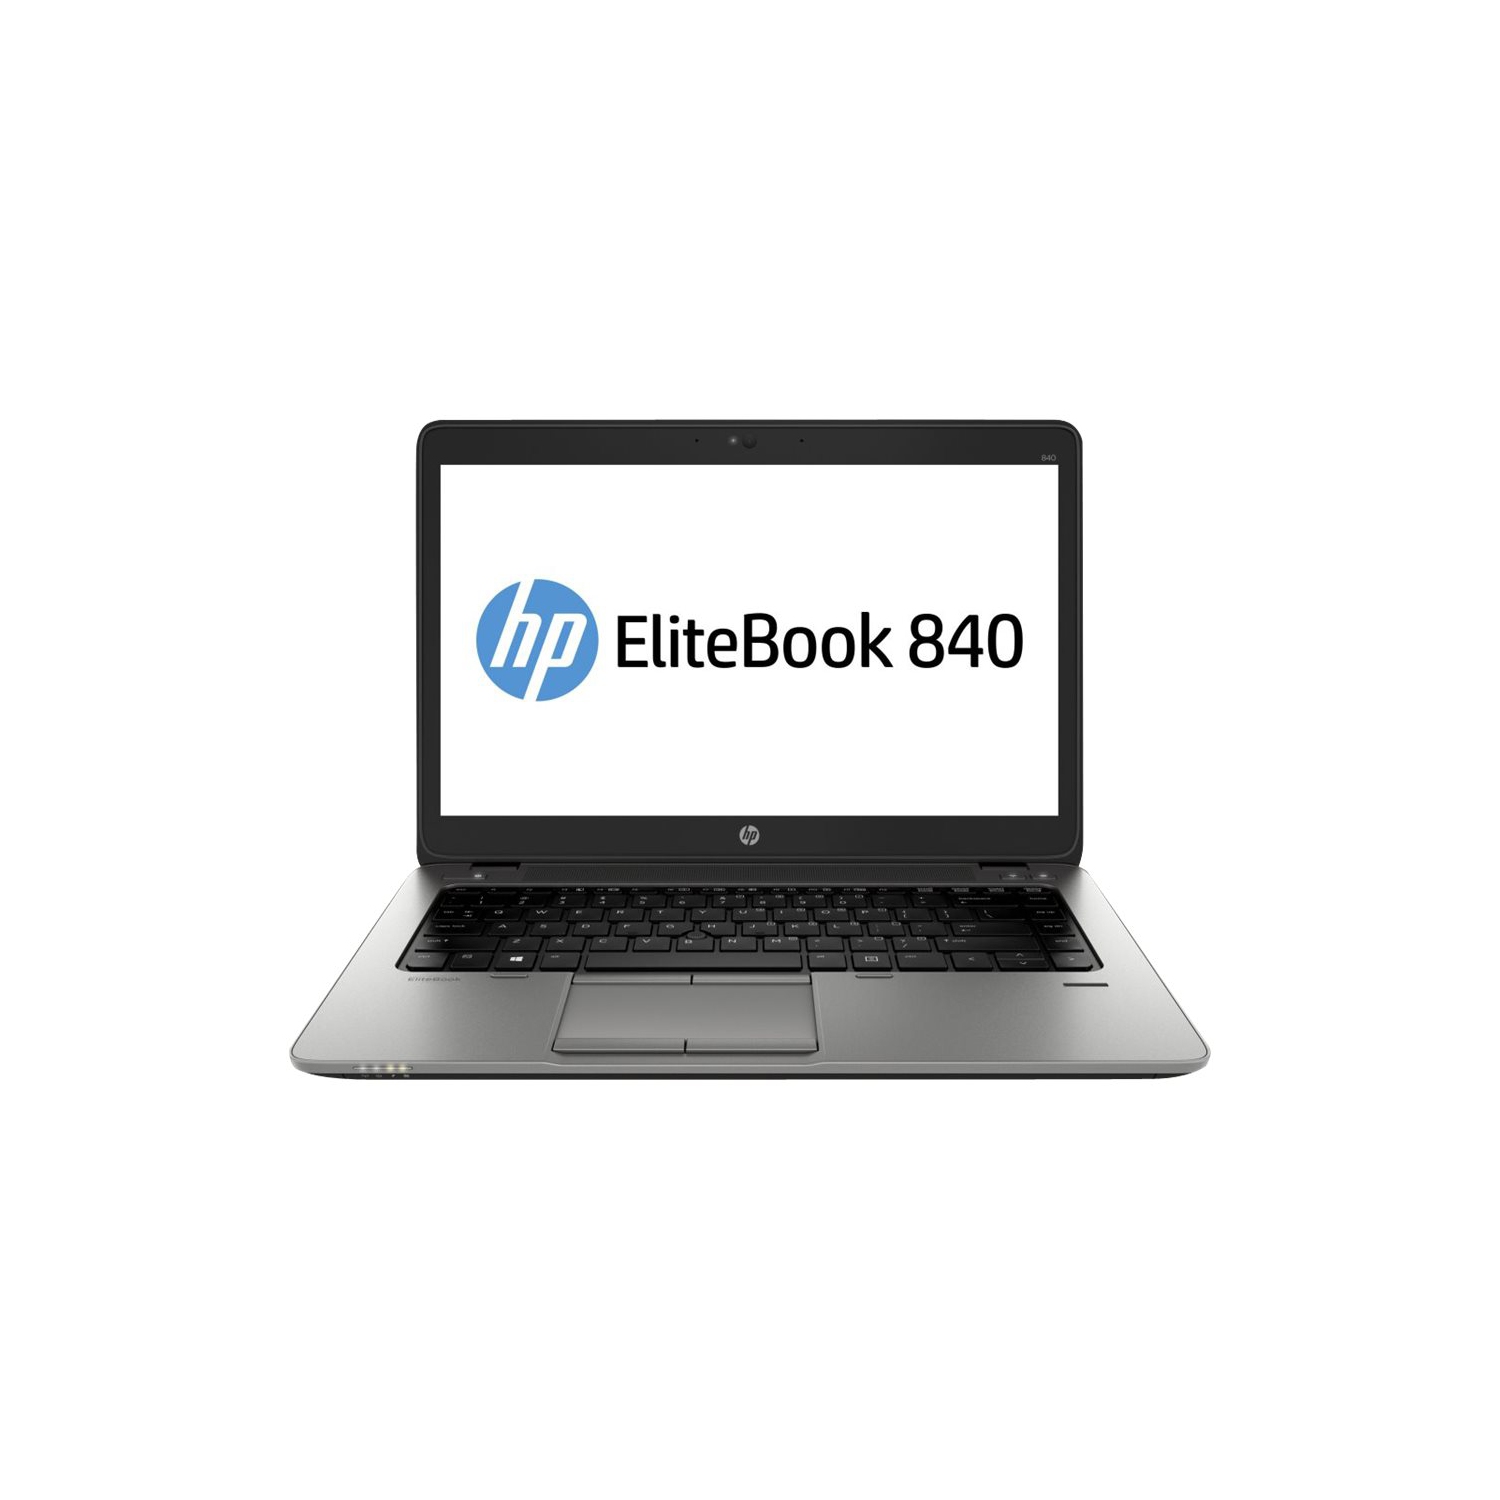 HP EliteBook 840 G2 14" Laptop - Intel Core i5 5th Gen, 8GB RAM, 240GB SSD, Windows 10 Pro, 1 Year Warranty - REFURBISHED